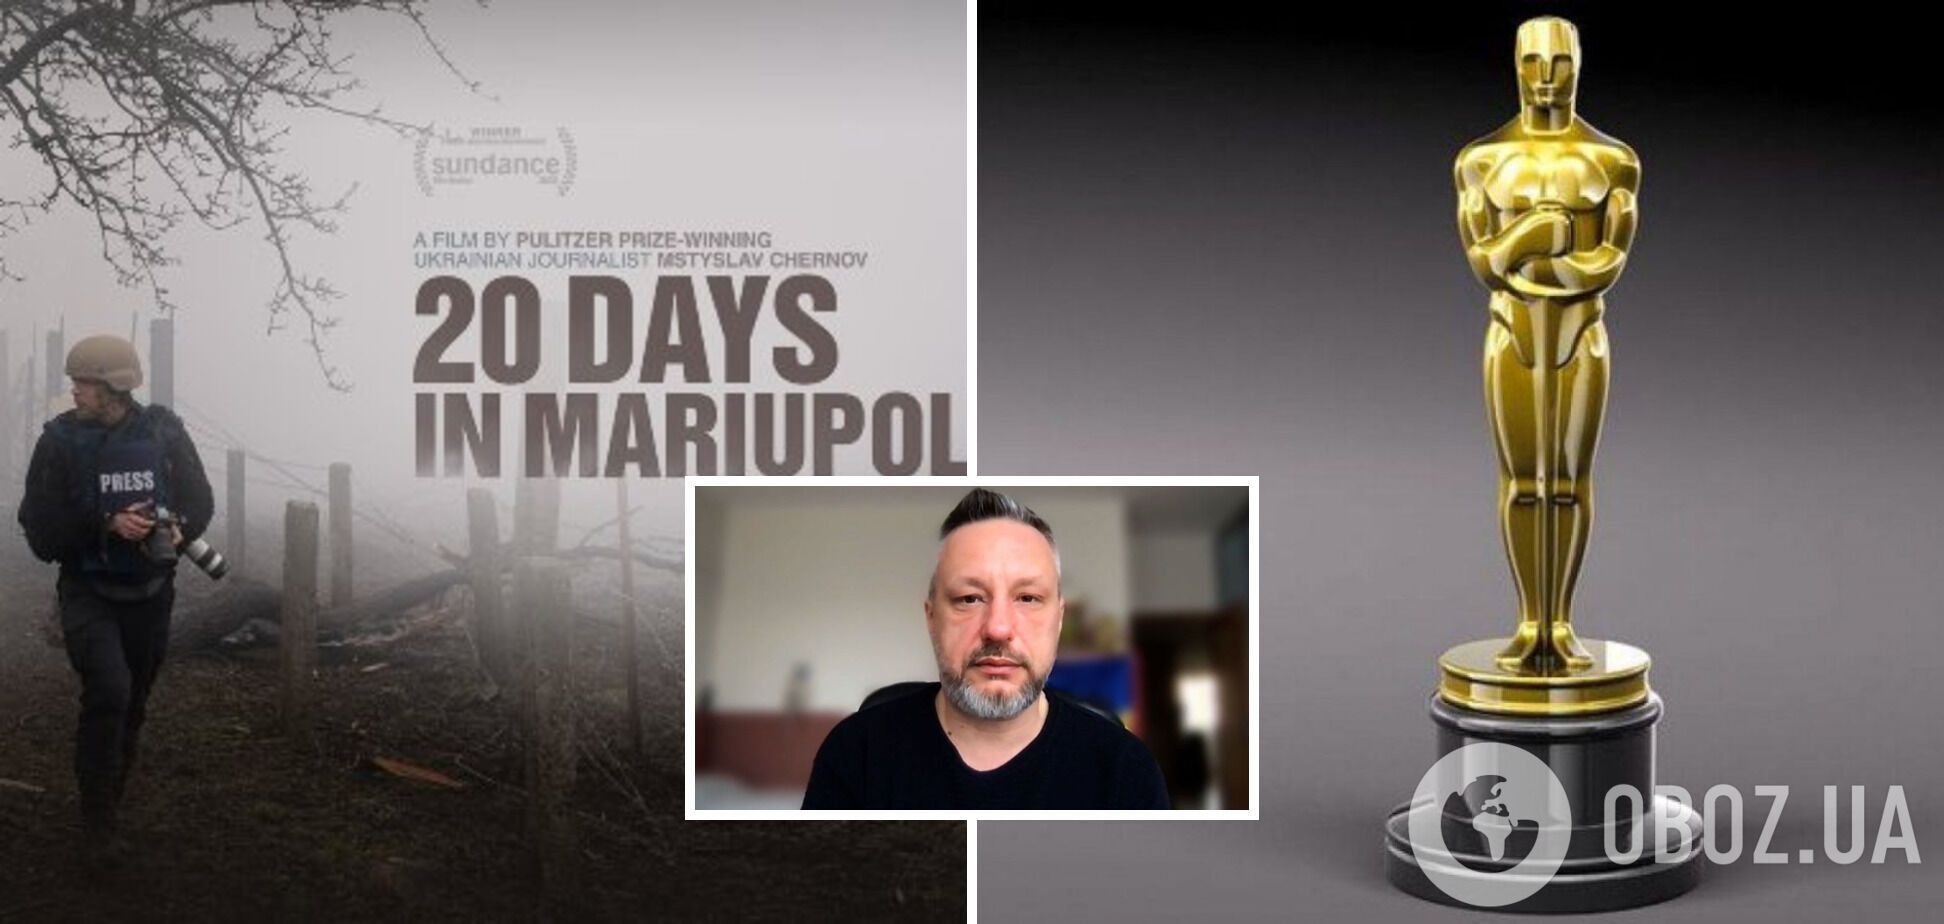  'Це перемога правди': радник мера Маріуполя відреагував на Оскар для фільму '20 днів у Маріуполі'